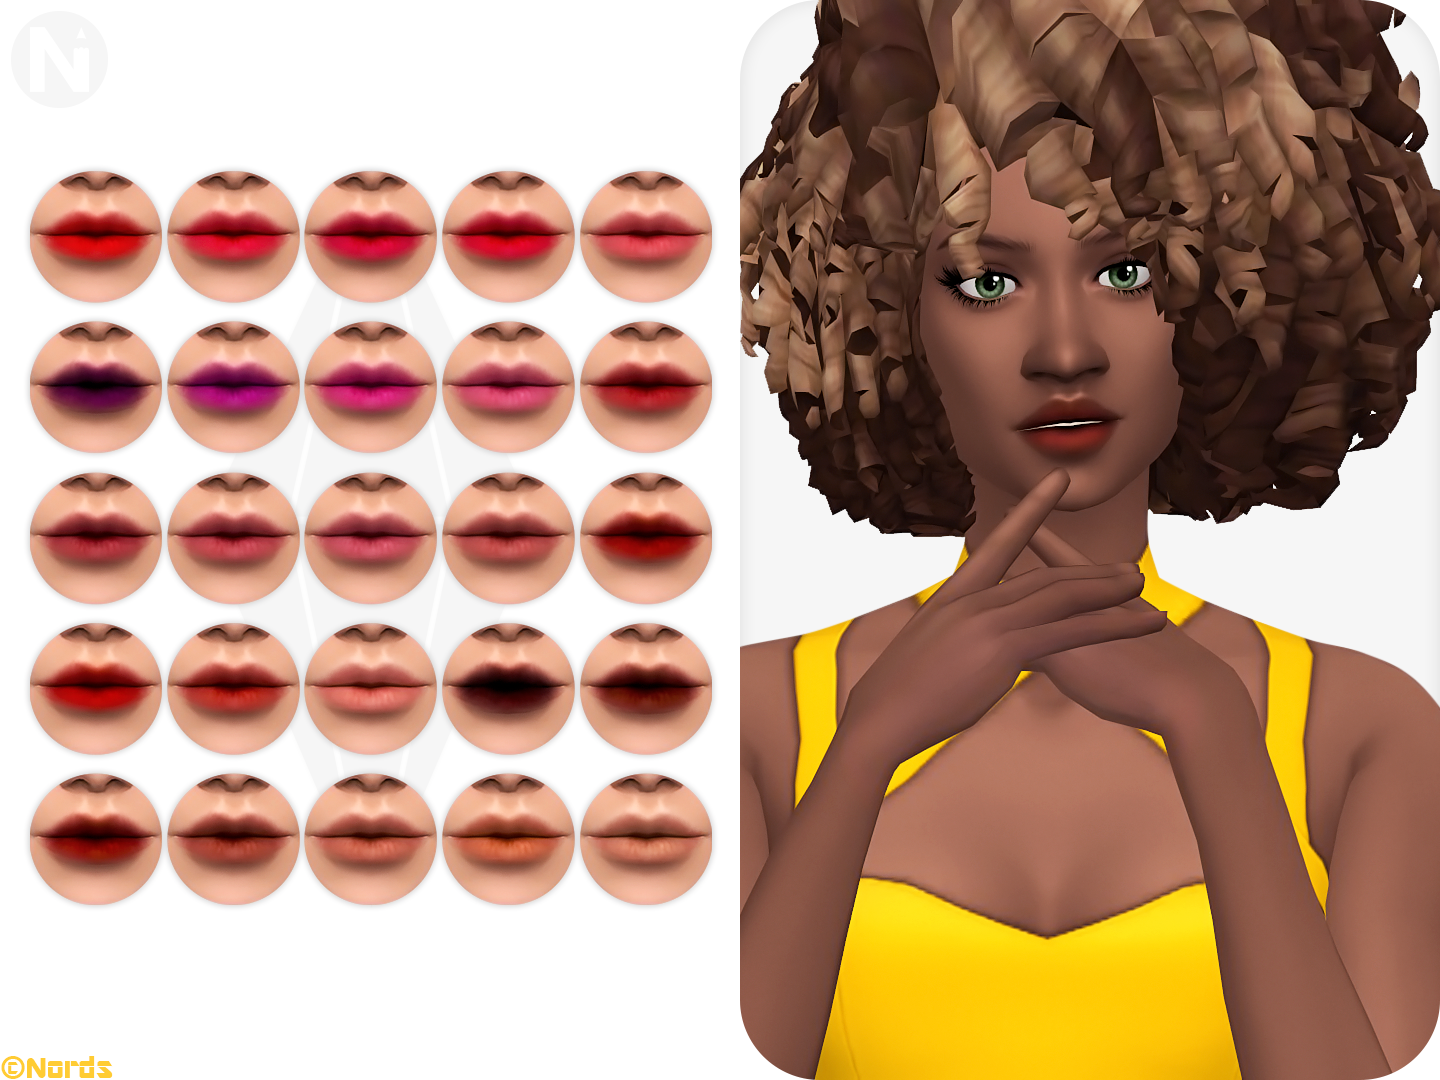 Tender Puff Sims 4 CC Lipstick